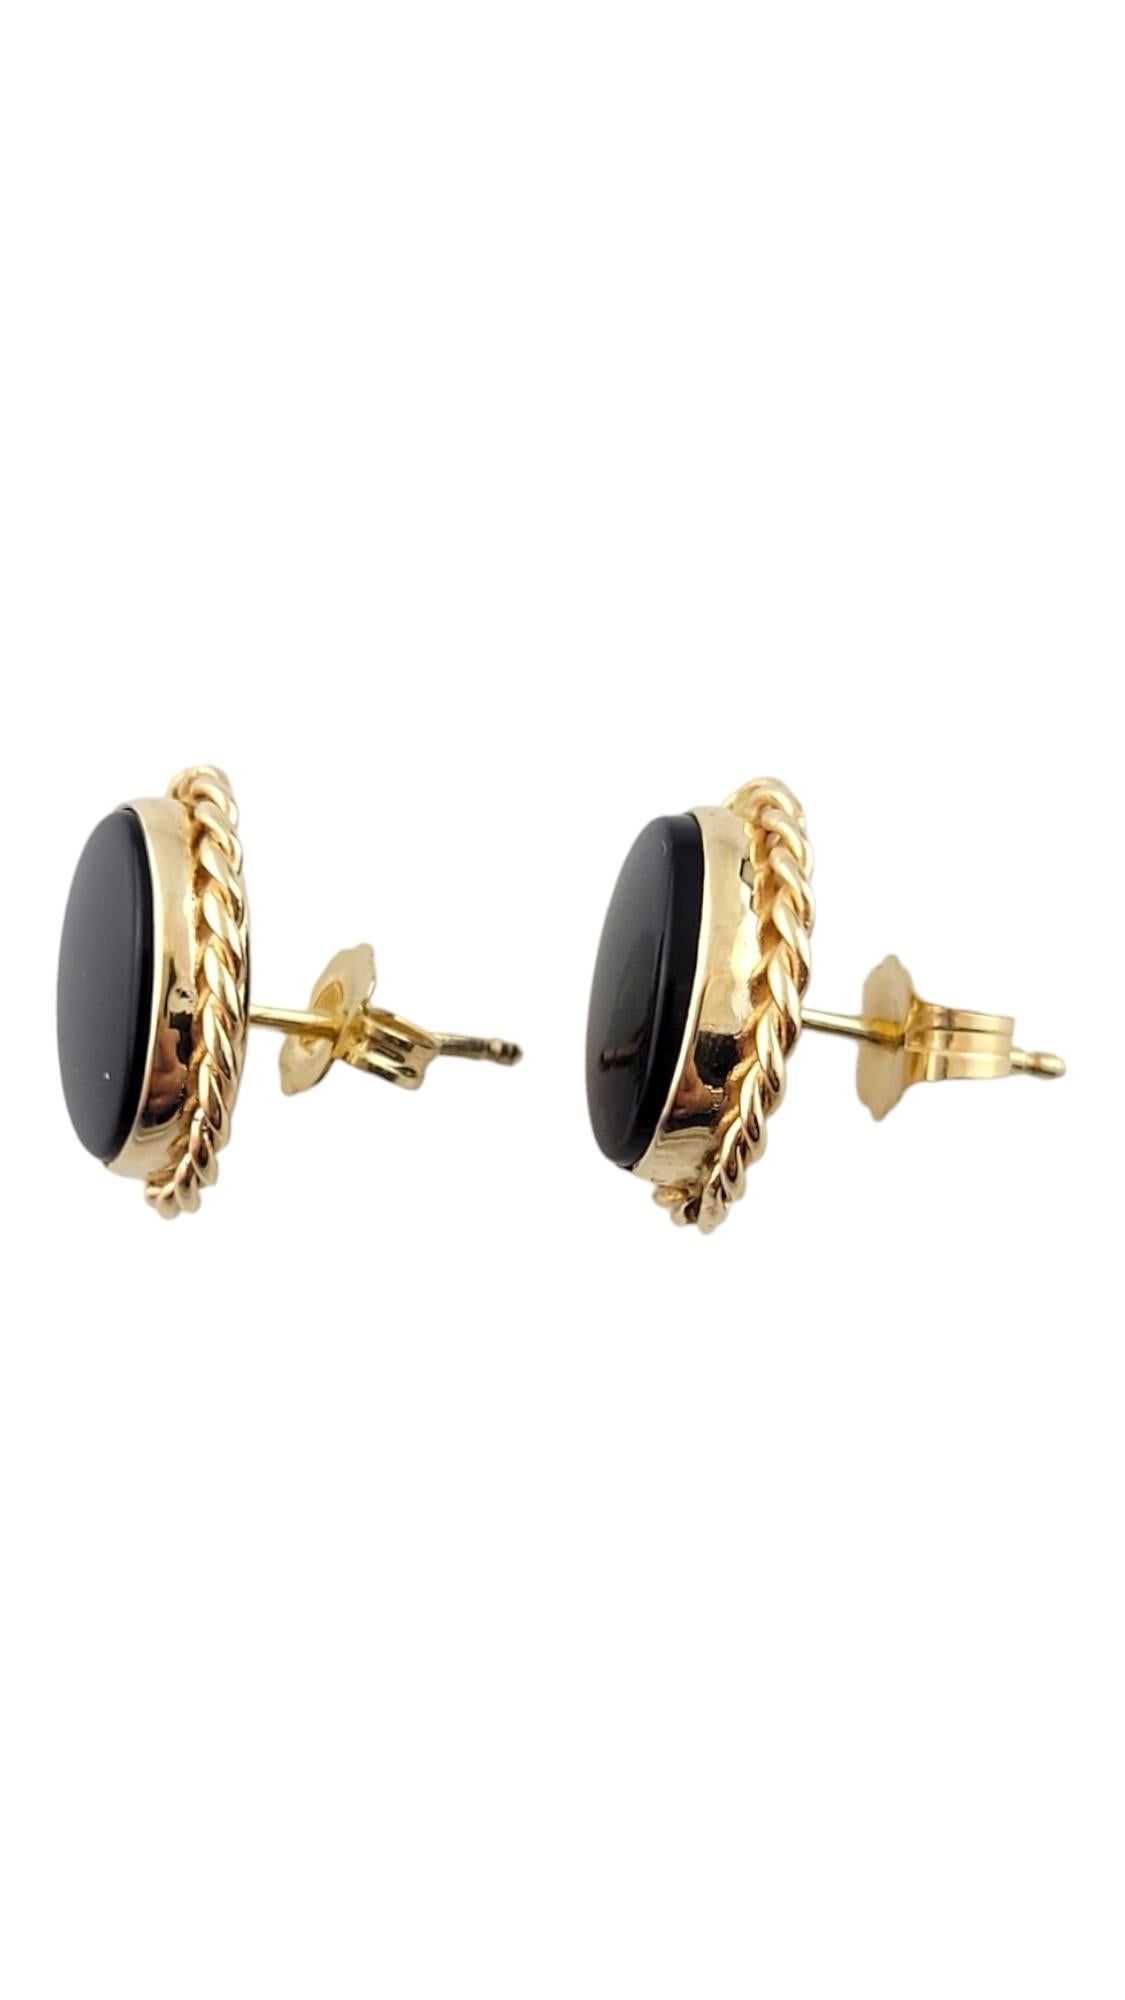 Oval Cut 14K Yellow Gold Onyx Earrings #16265 For Sale